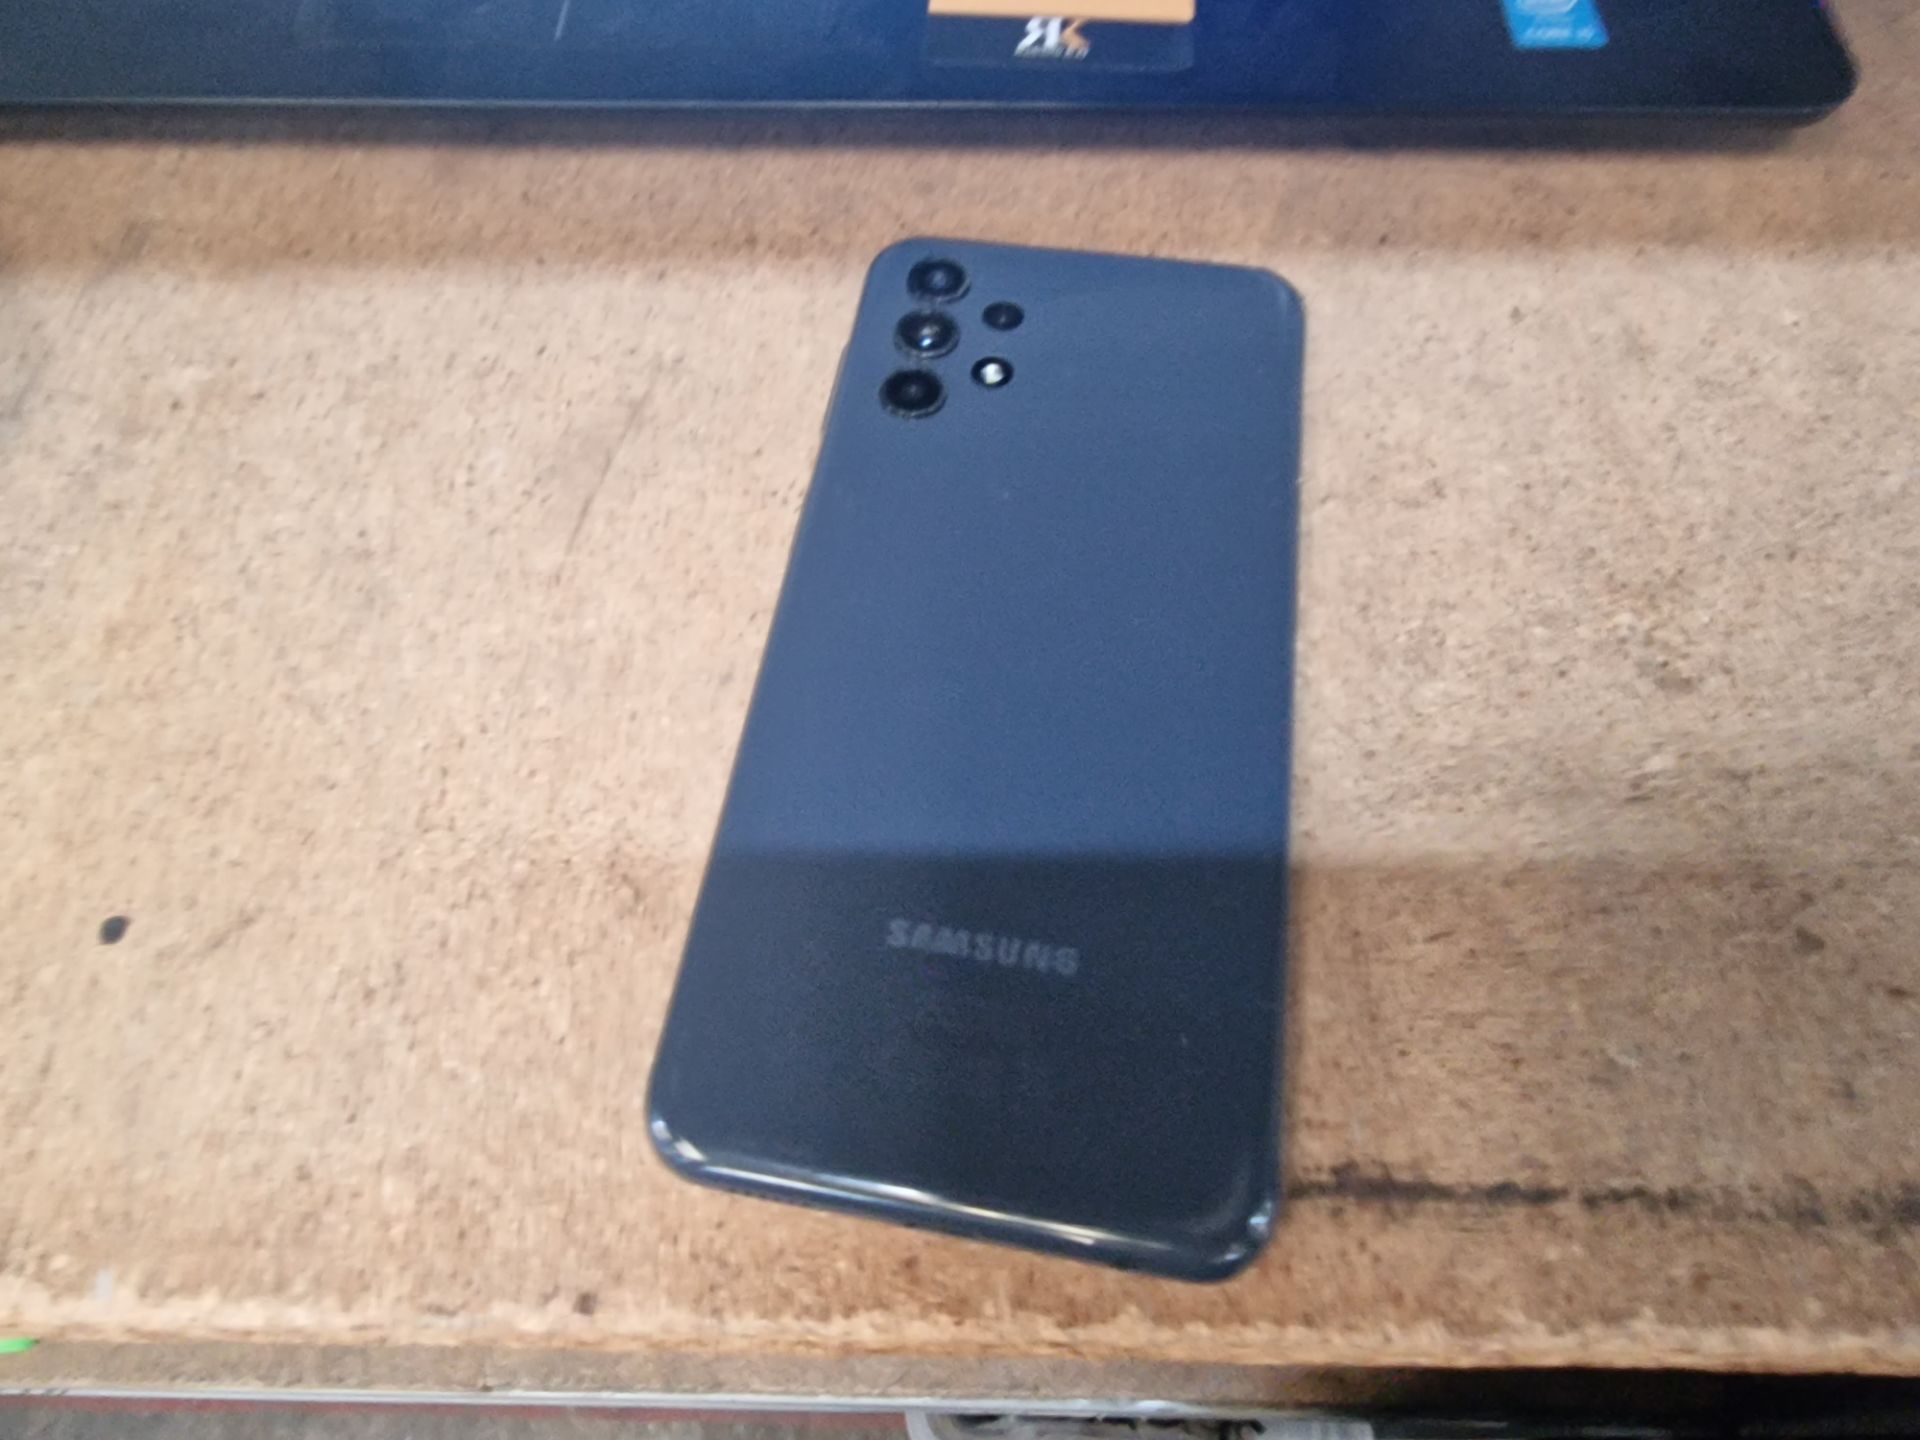 Galaxy smartphone - no ancillaries - Image 3 of 7